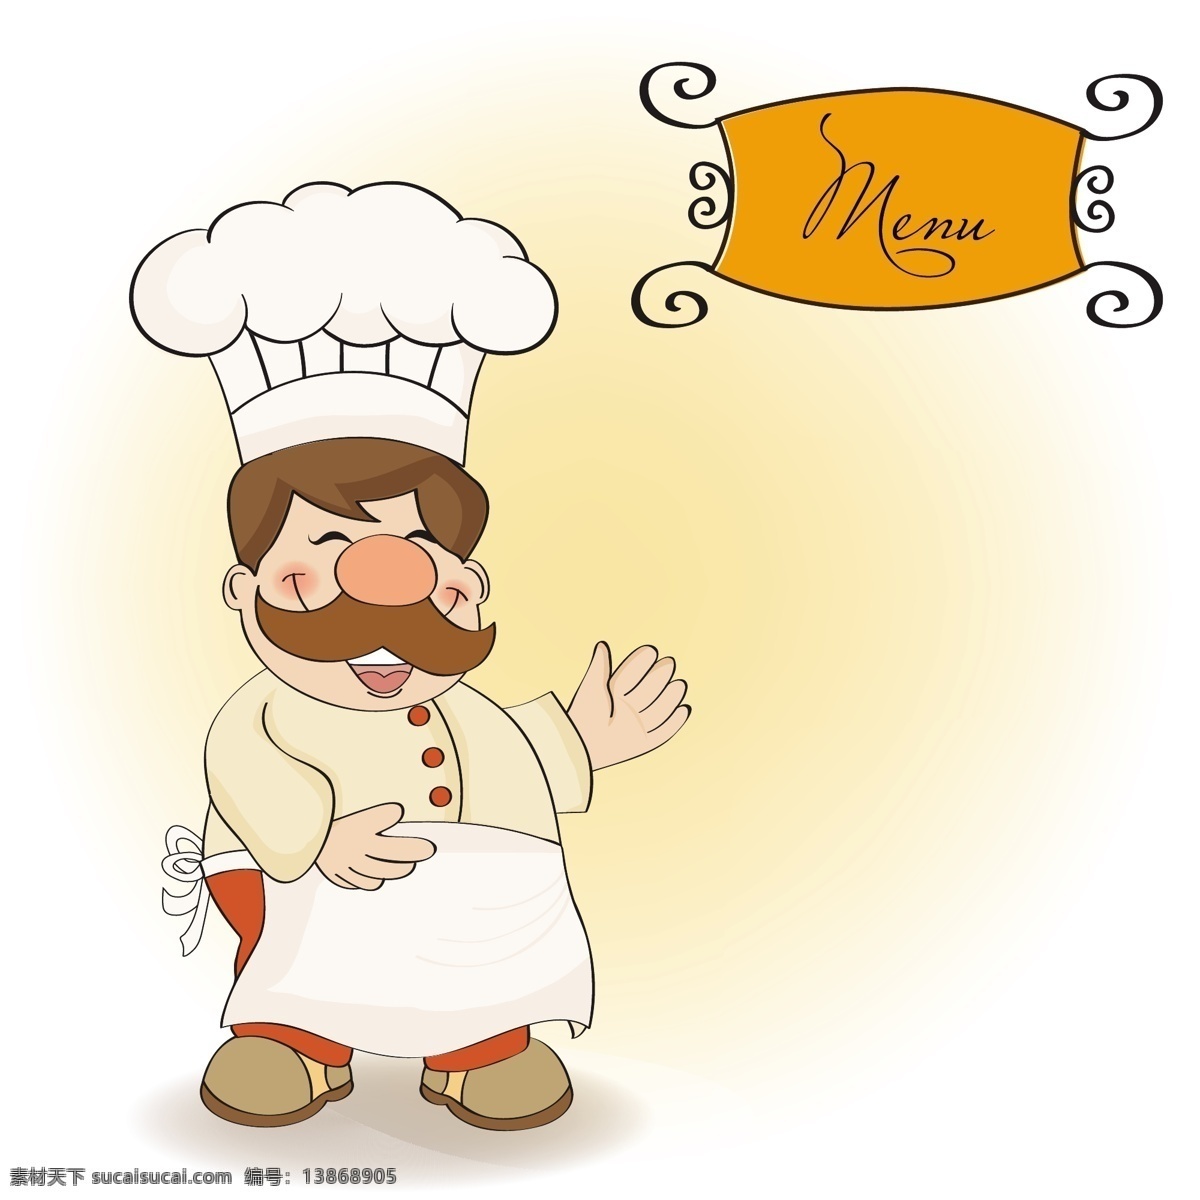 厨师微笑 食物 菜单 餐厅 男士 厨房 厨师 卡通 活动 烹饪 晚餐 午餐 帽子 食谱 笑声 面包师 自助餐 用餐者